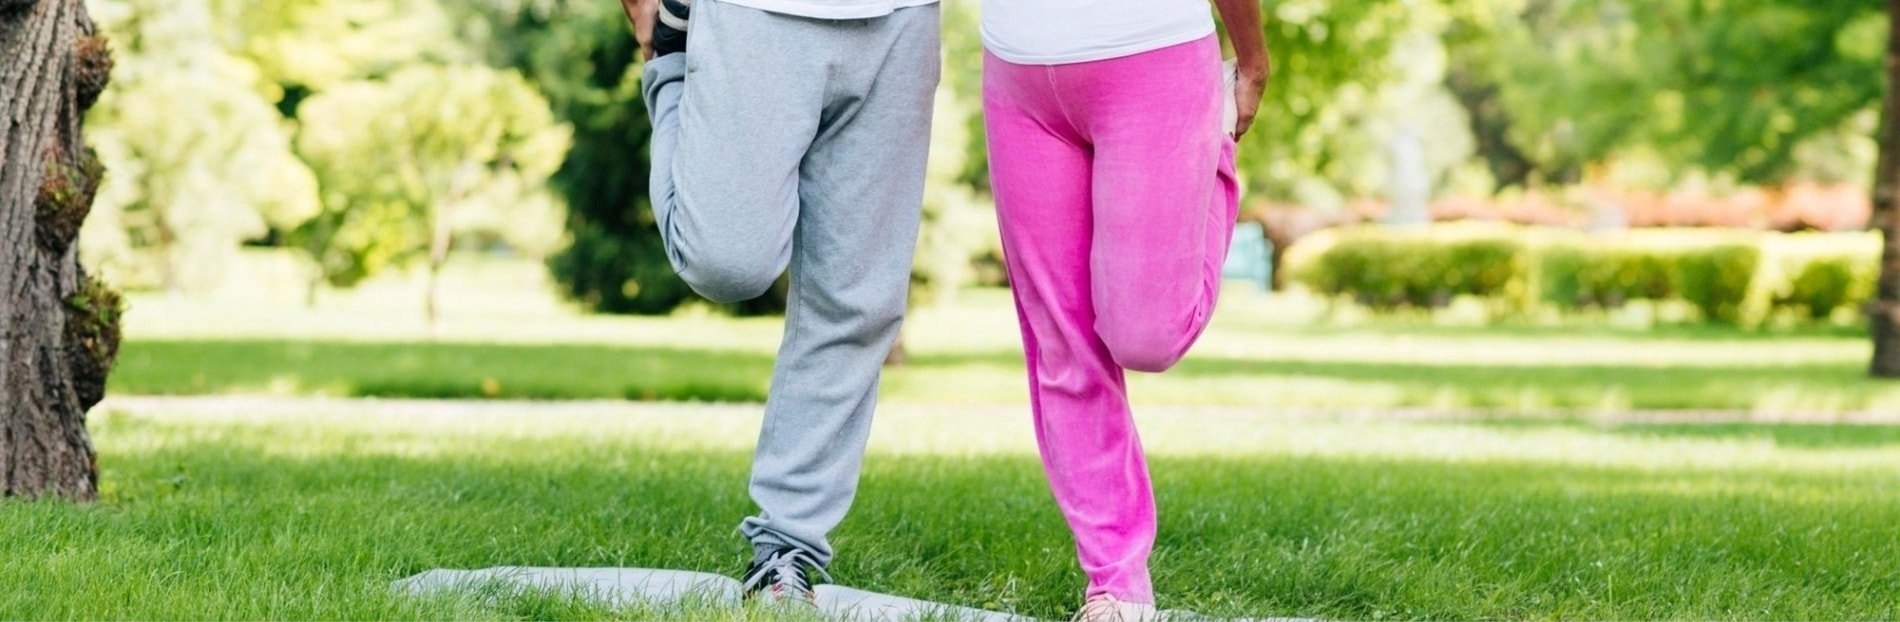 Stariji muškarac i žena s artritisom koljena u sportskoj odjeći vježbaju u prirodi.